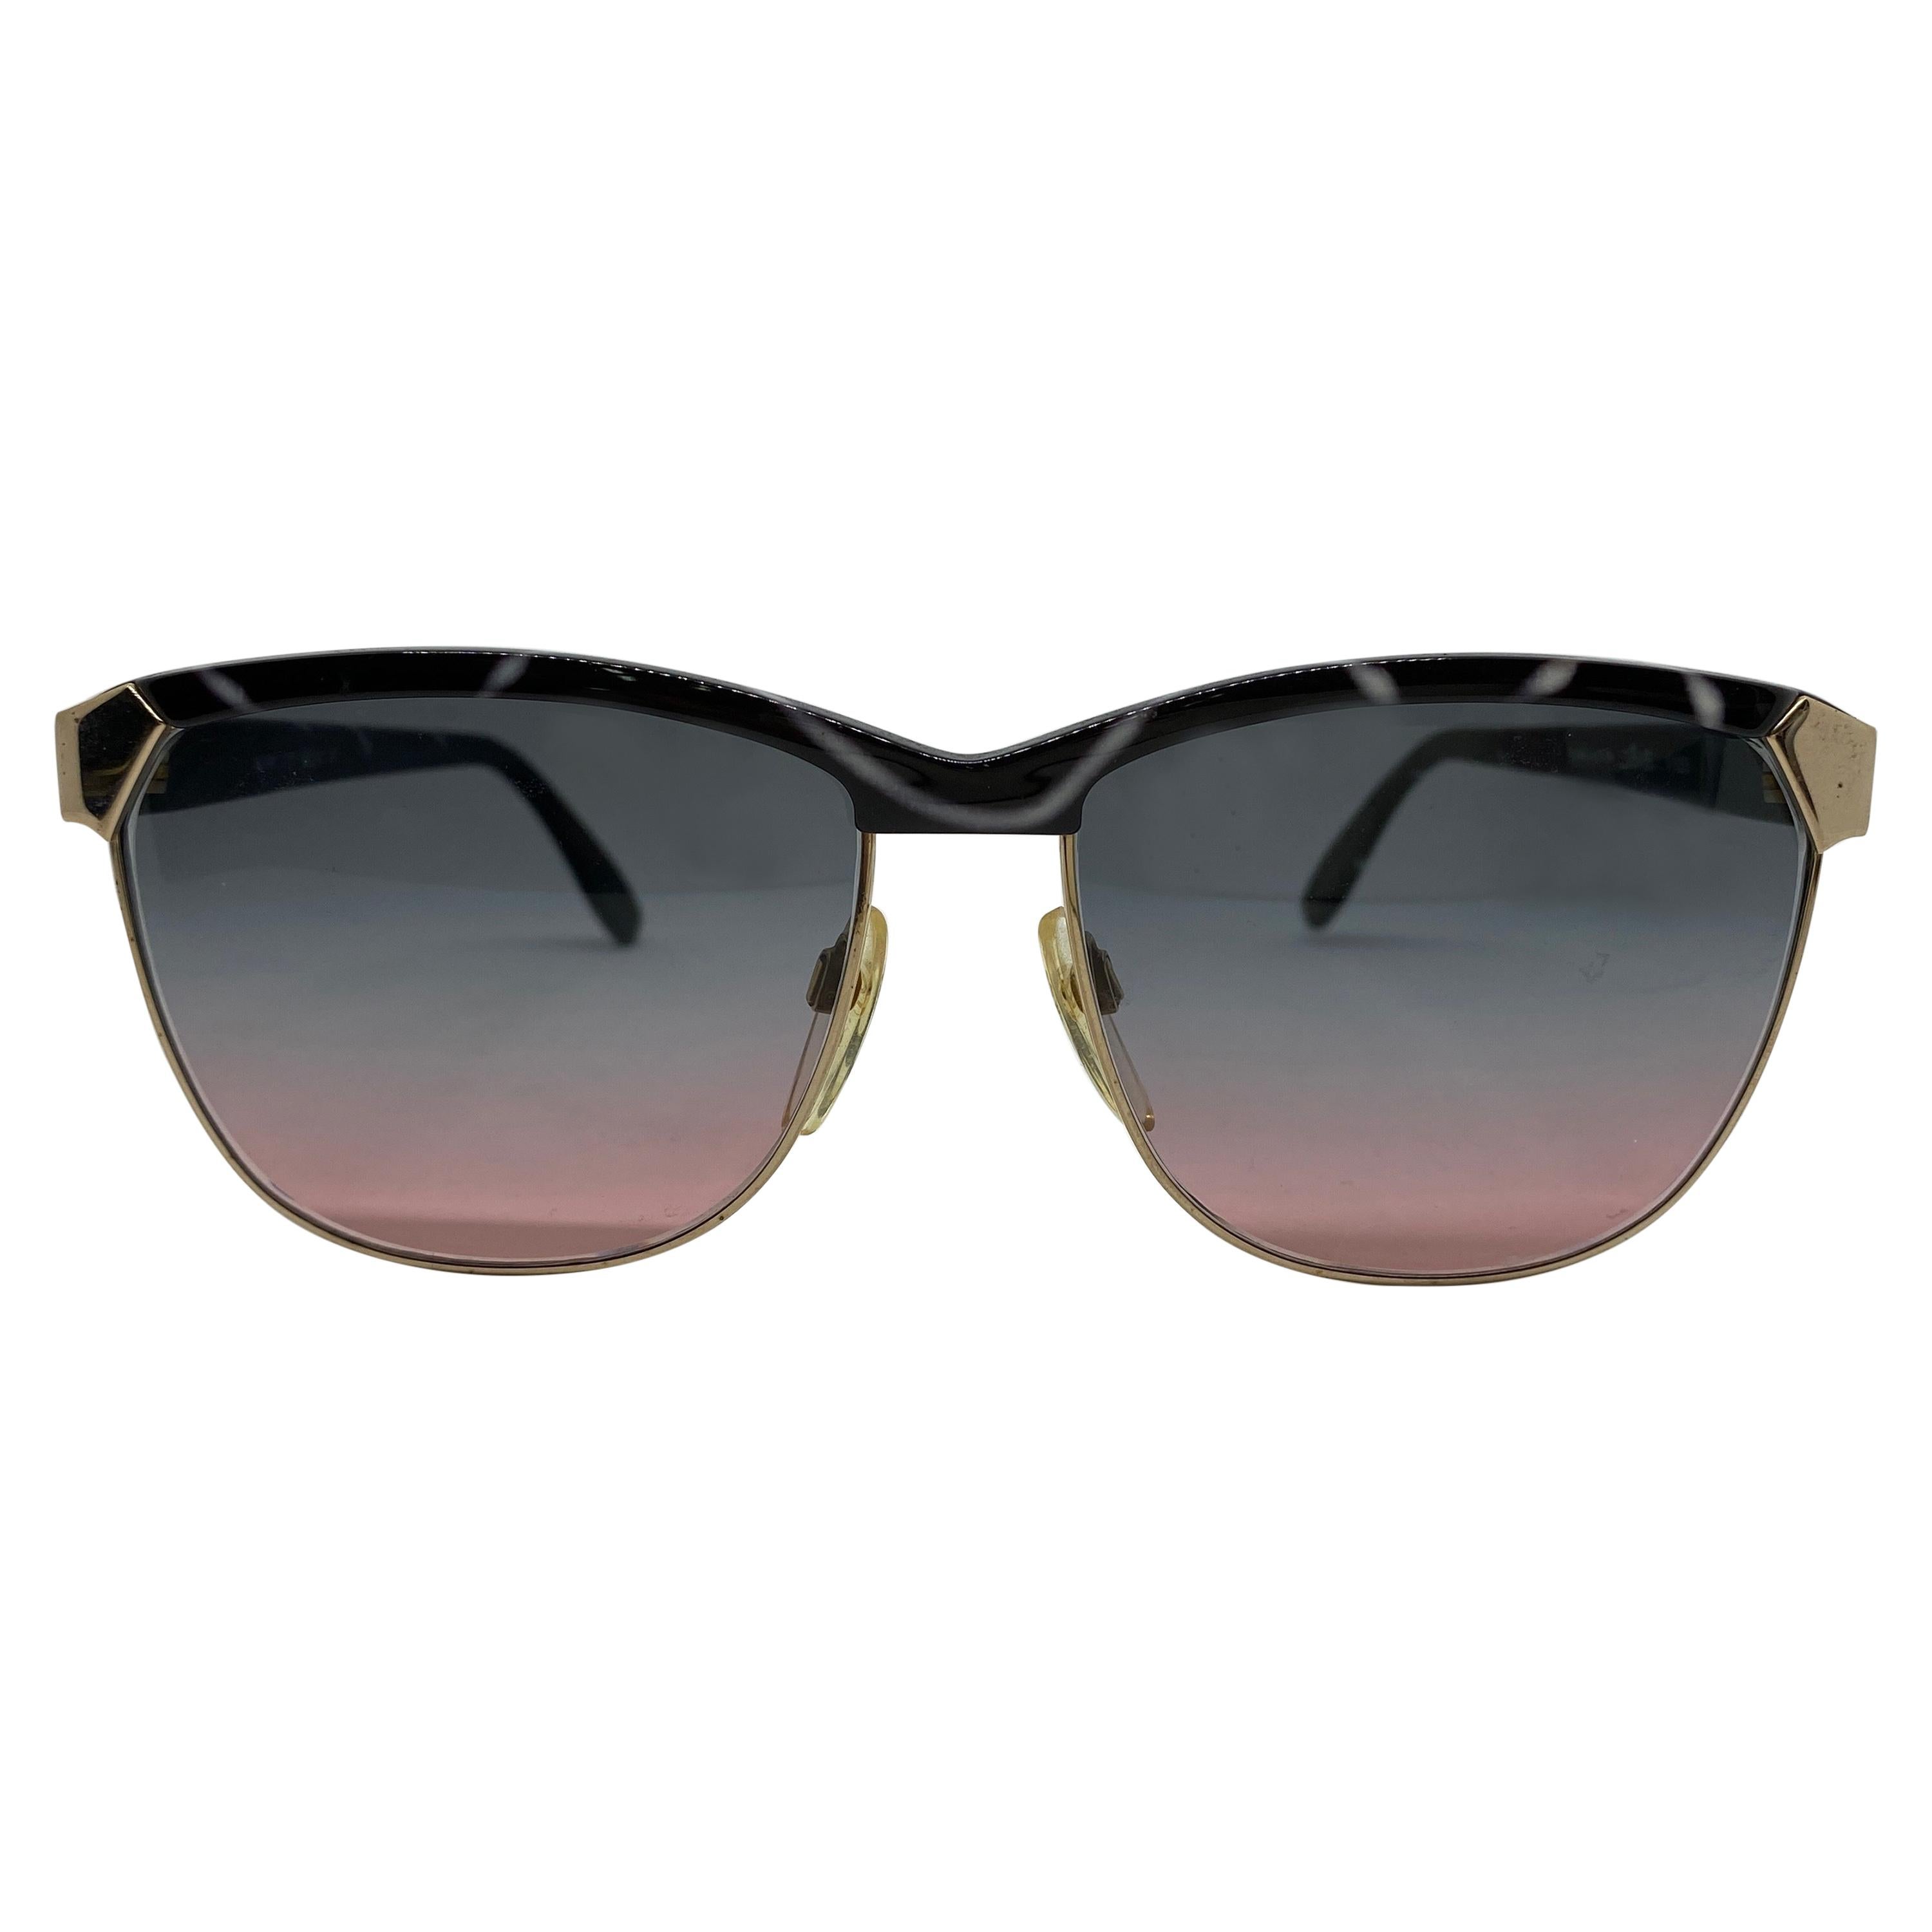 1990er Jahre Hochwertige italienische Vintage-Sonnenbrille von Silhouette